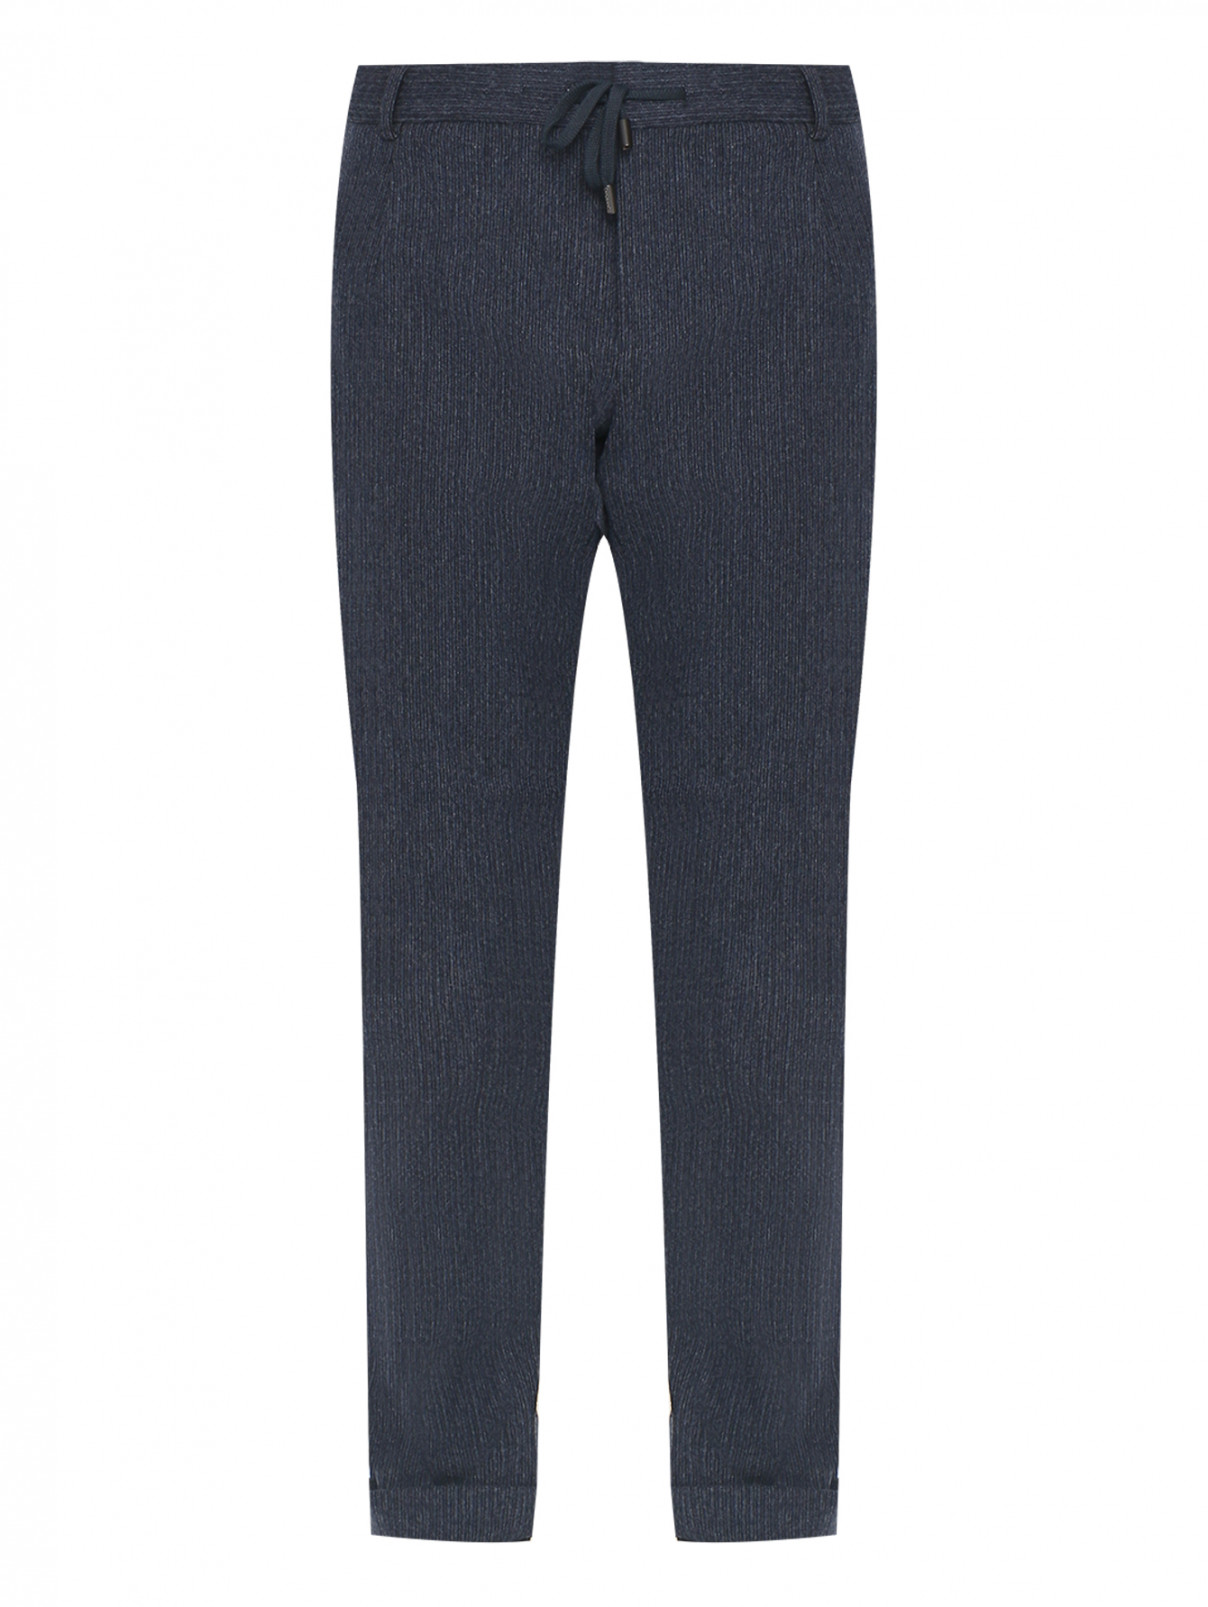 Зауженные брюки из шерсти Capobianco  –  Общий вид  – Цвет:  Синий